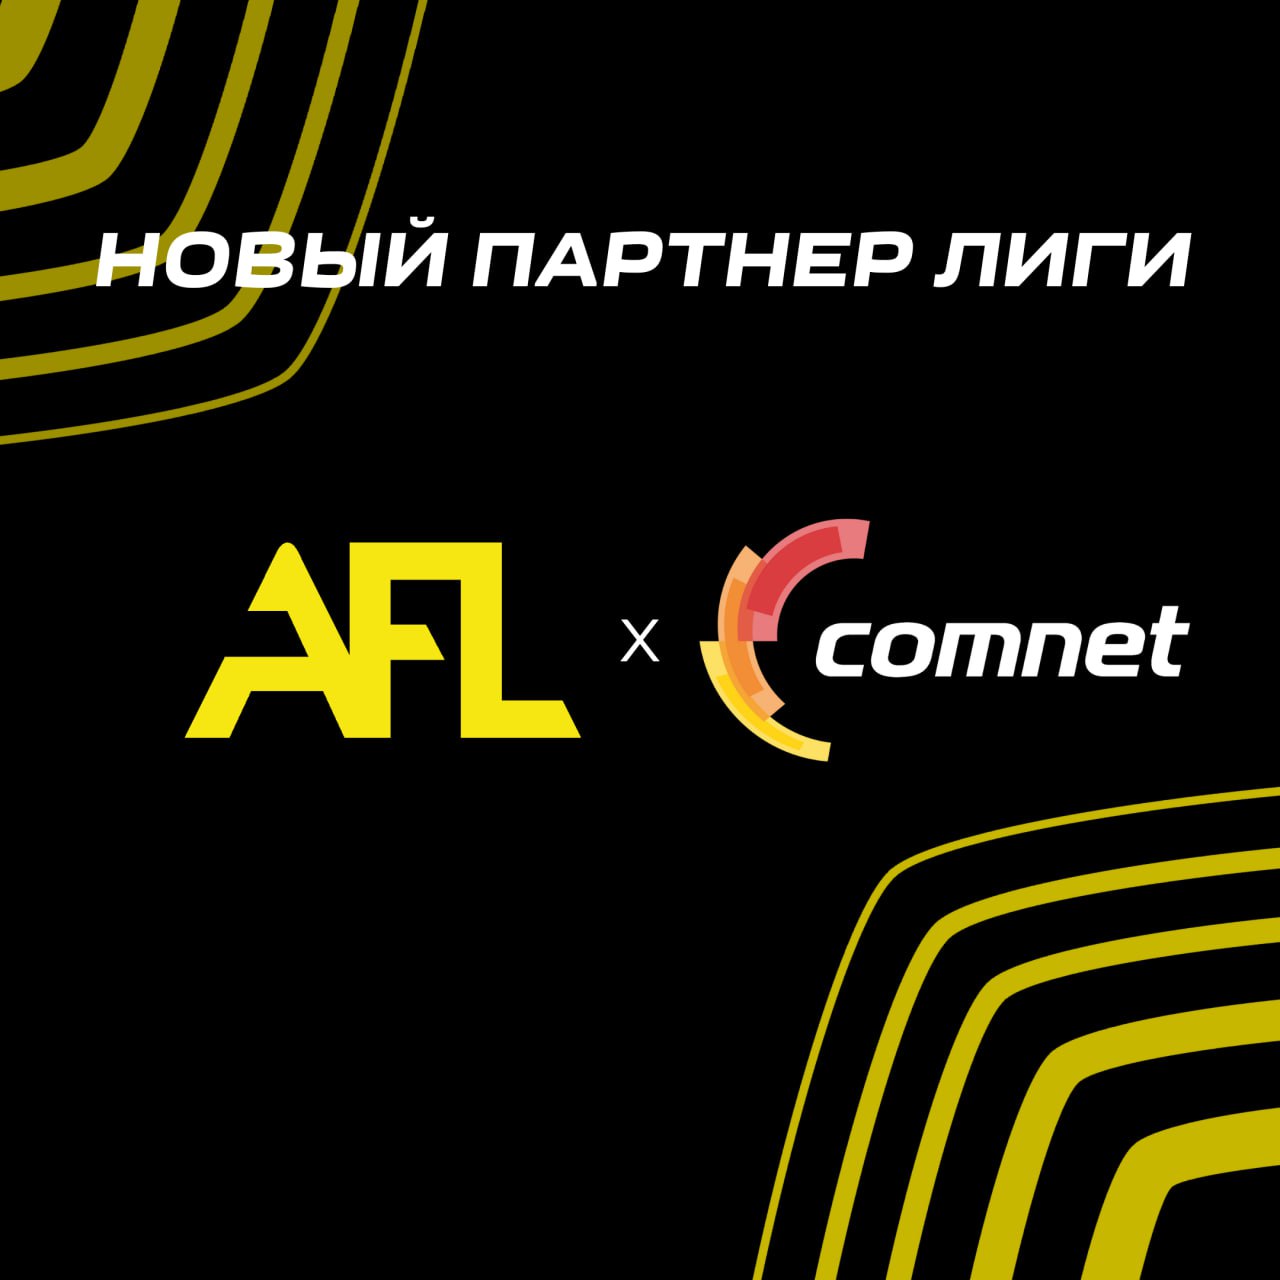 Comnet uz. Комнет. COMNET uz logo. Комнет Индемит. COMNET WLFL LPTV Uzbek.